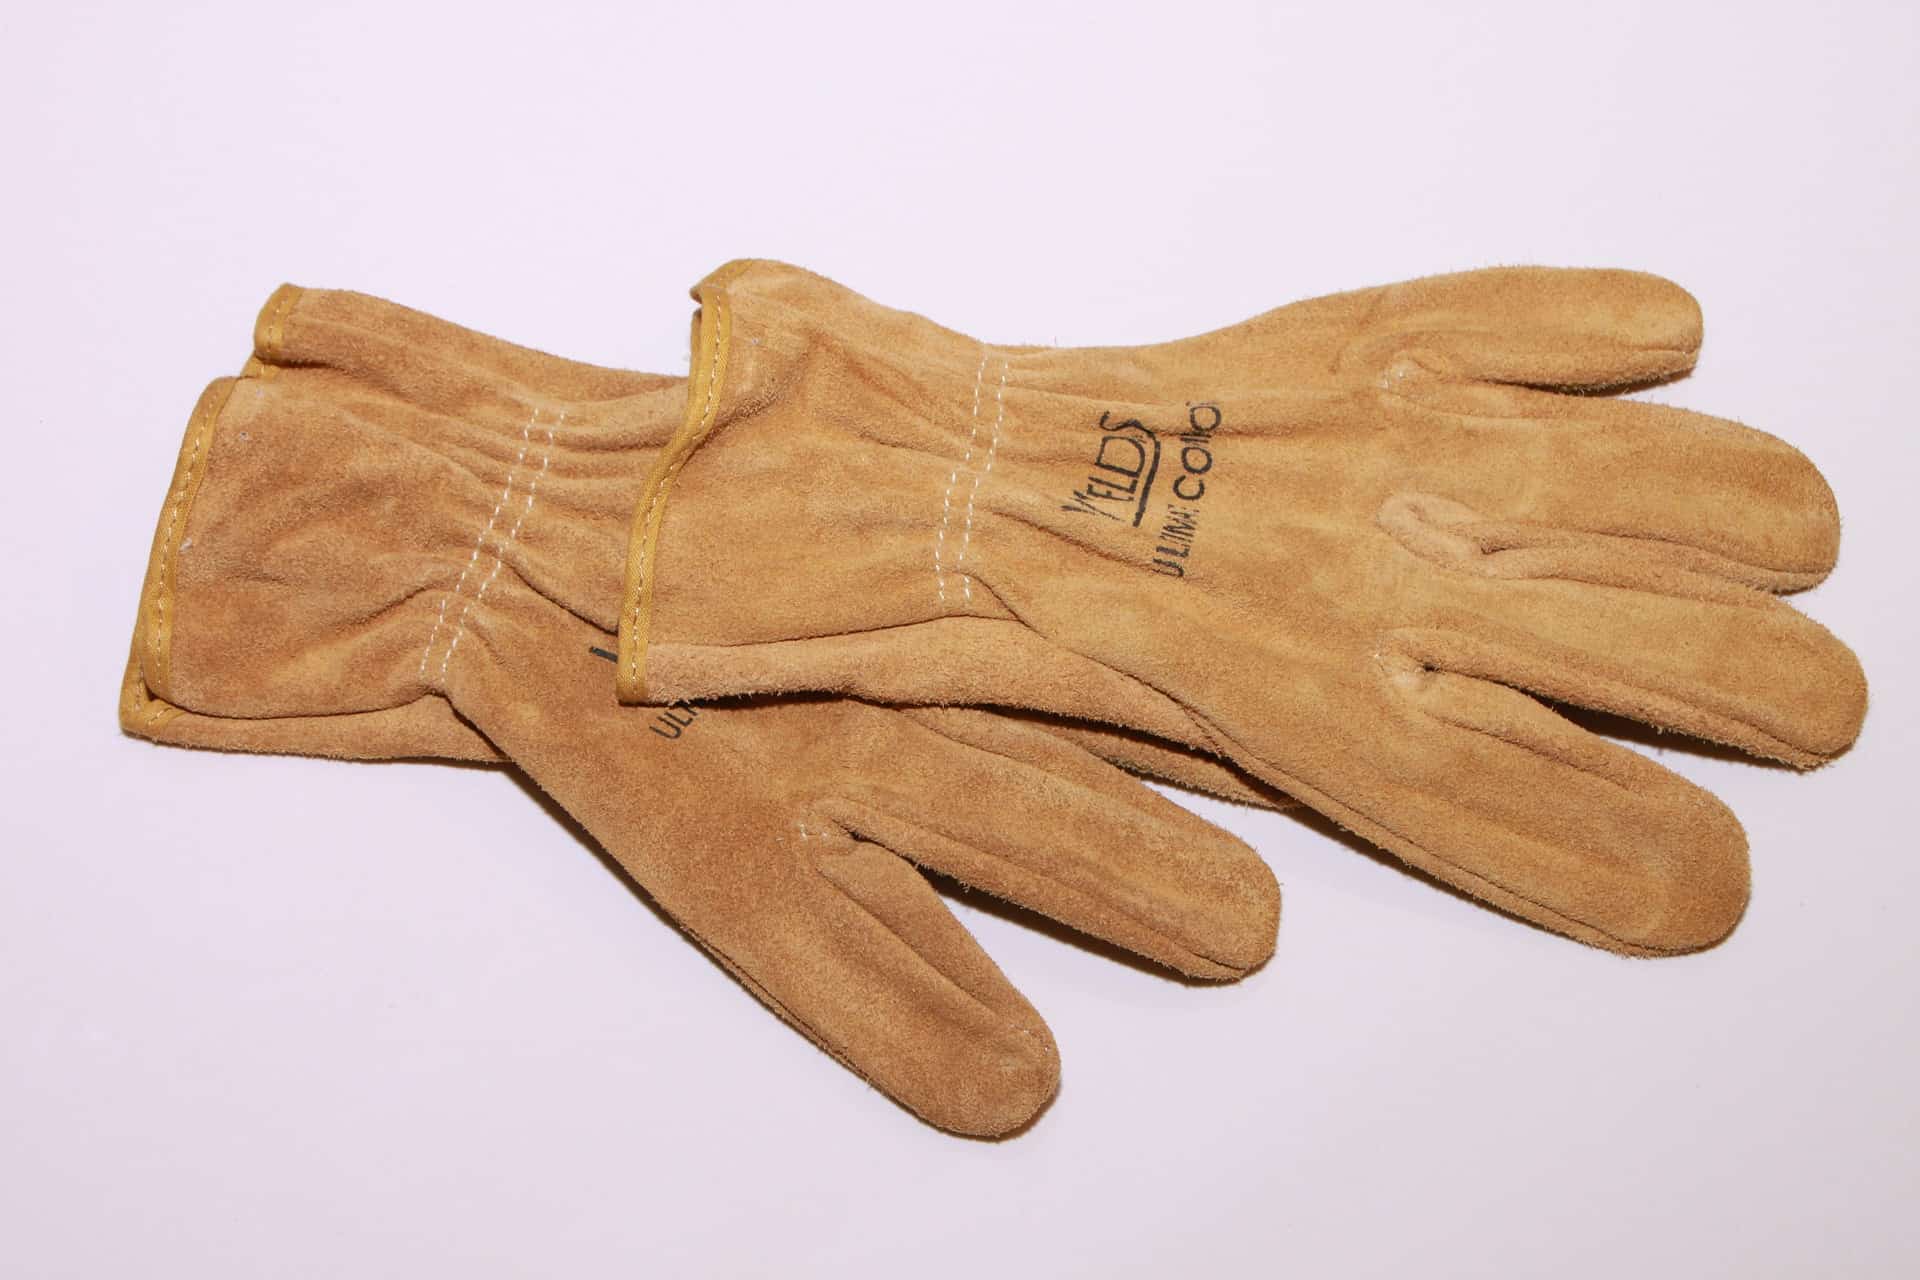 Azusa Safety WMIG Welderbeast Premium MIG Welding Gloves 1 Pair X-Large